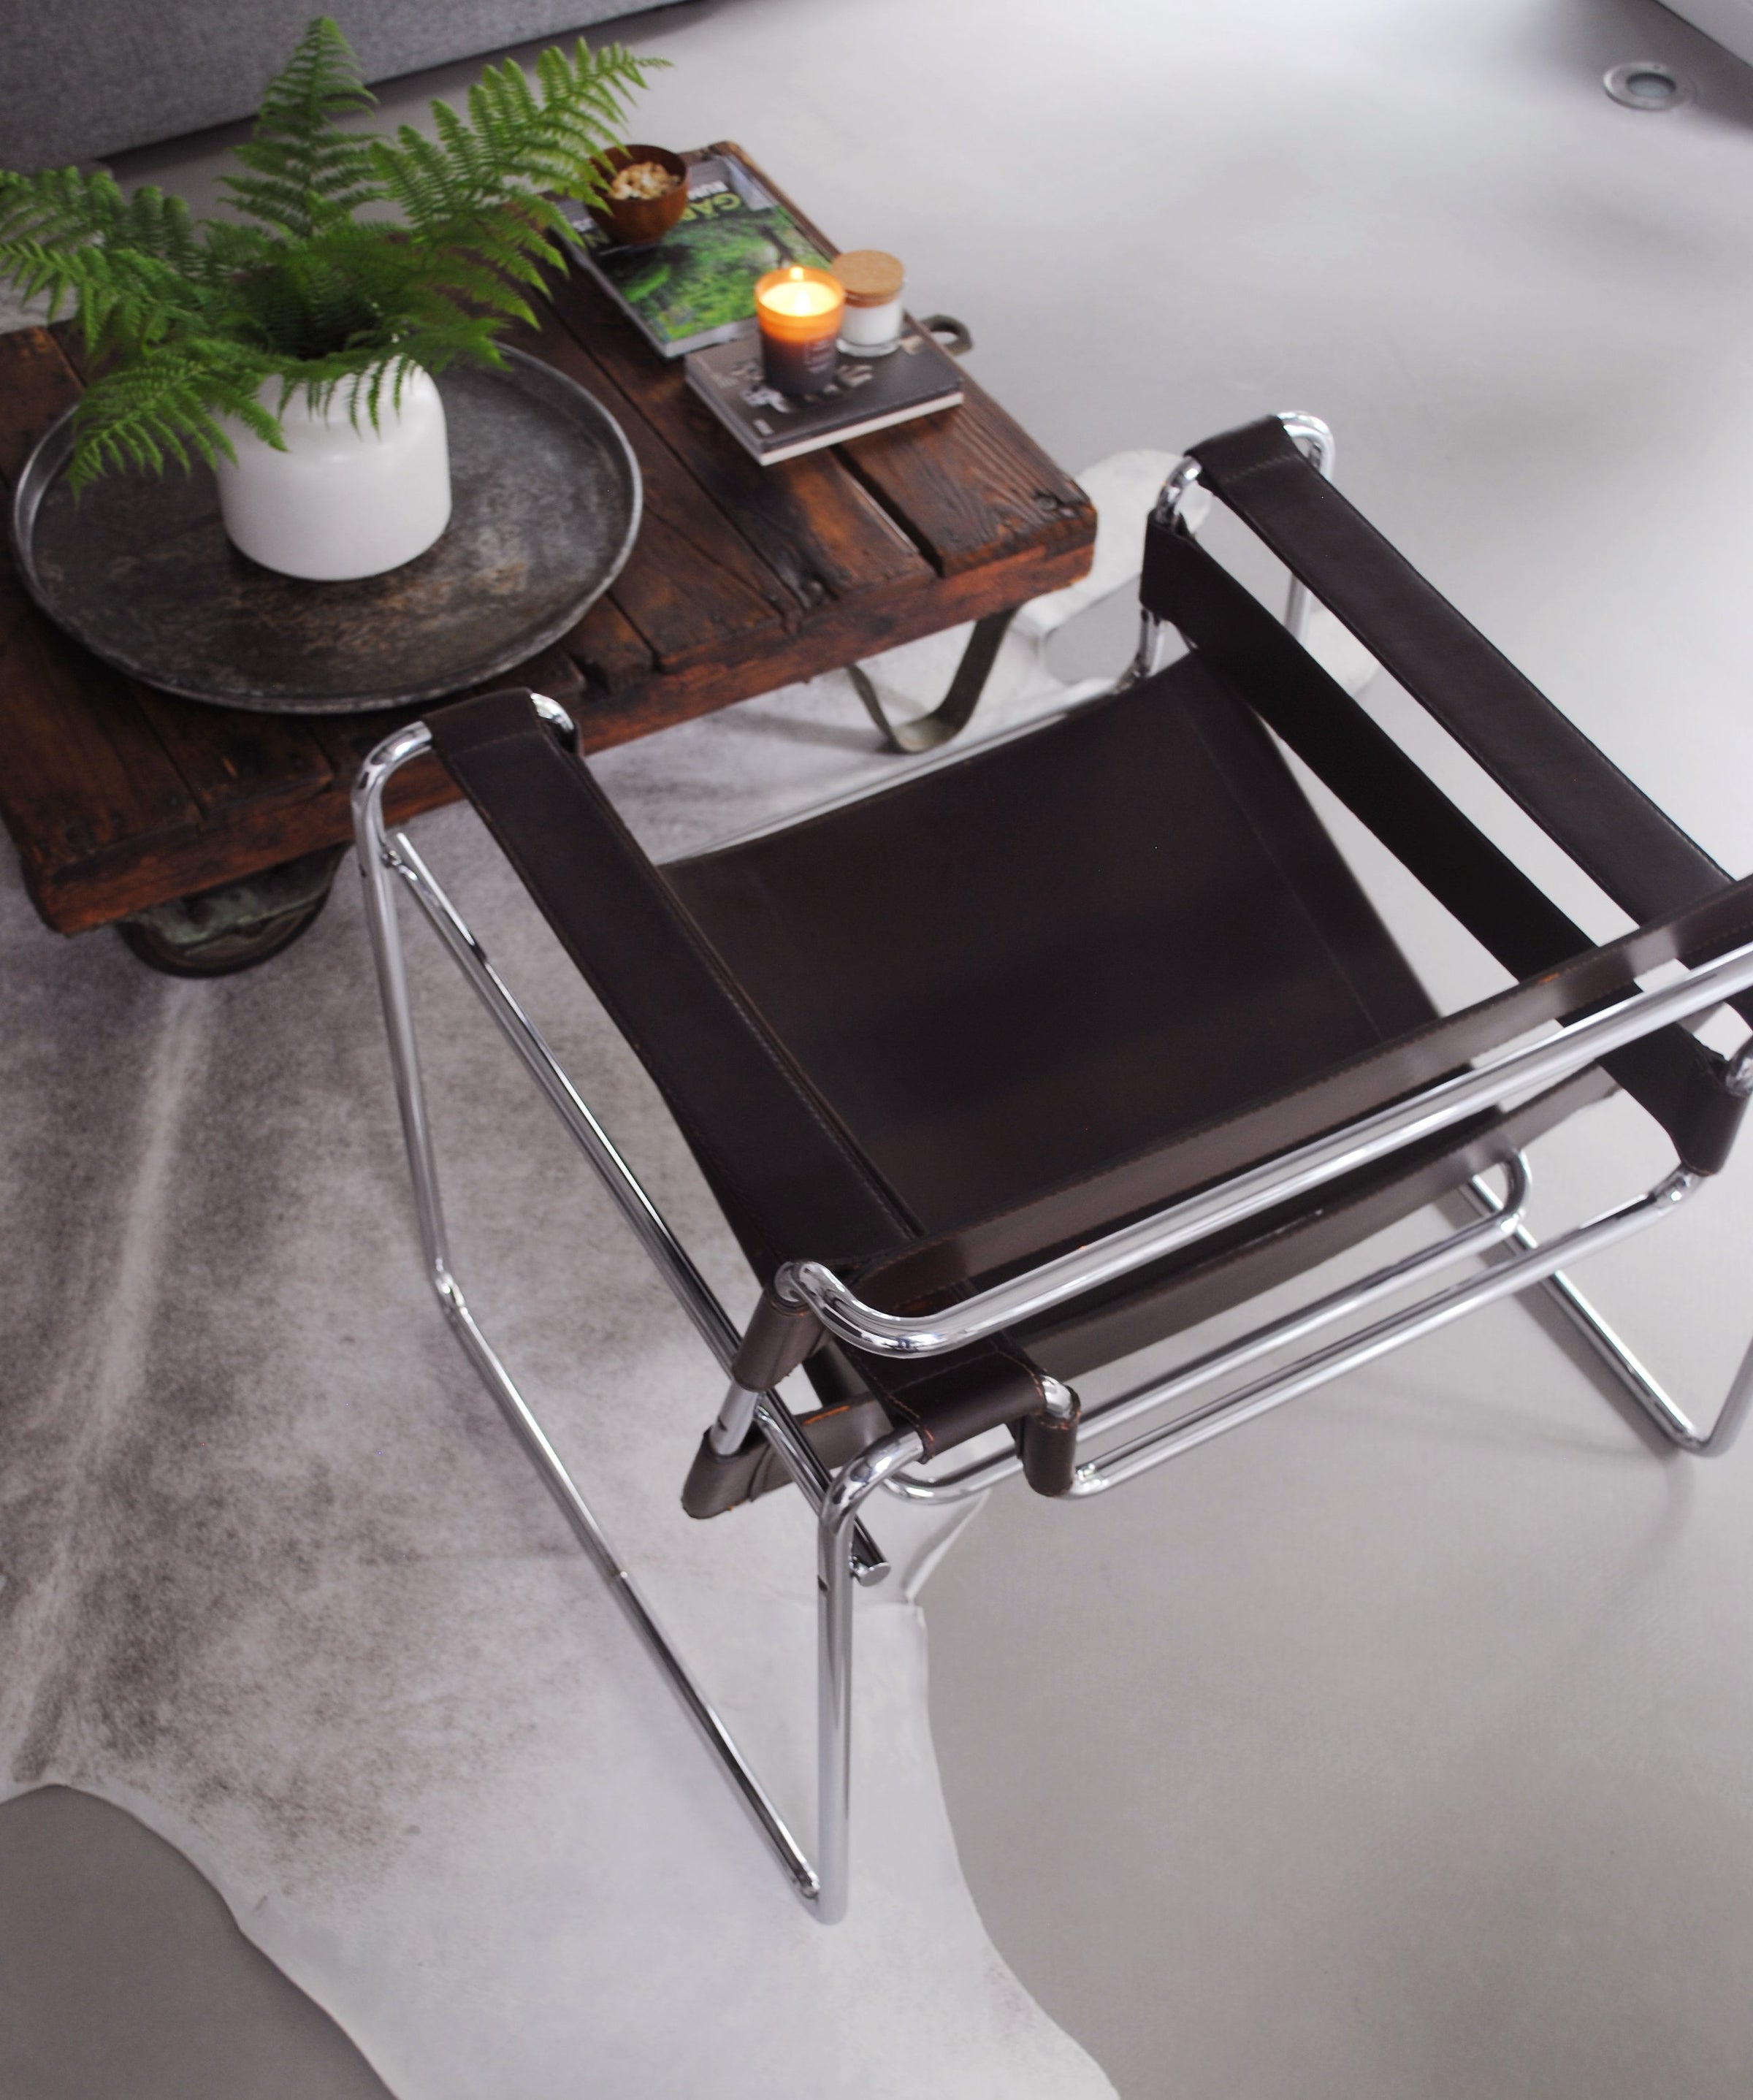 Original Wassily Chair von Knoll International - gebrauchte Designermöbel bei Revive in Köln, buero moebel, moebel online, gebrauchte möbel, möbel online, möbel kauf, möbel online kaufen, second hand möbel, möbel online shop, möbel outlet, 